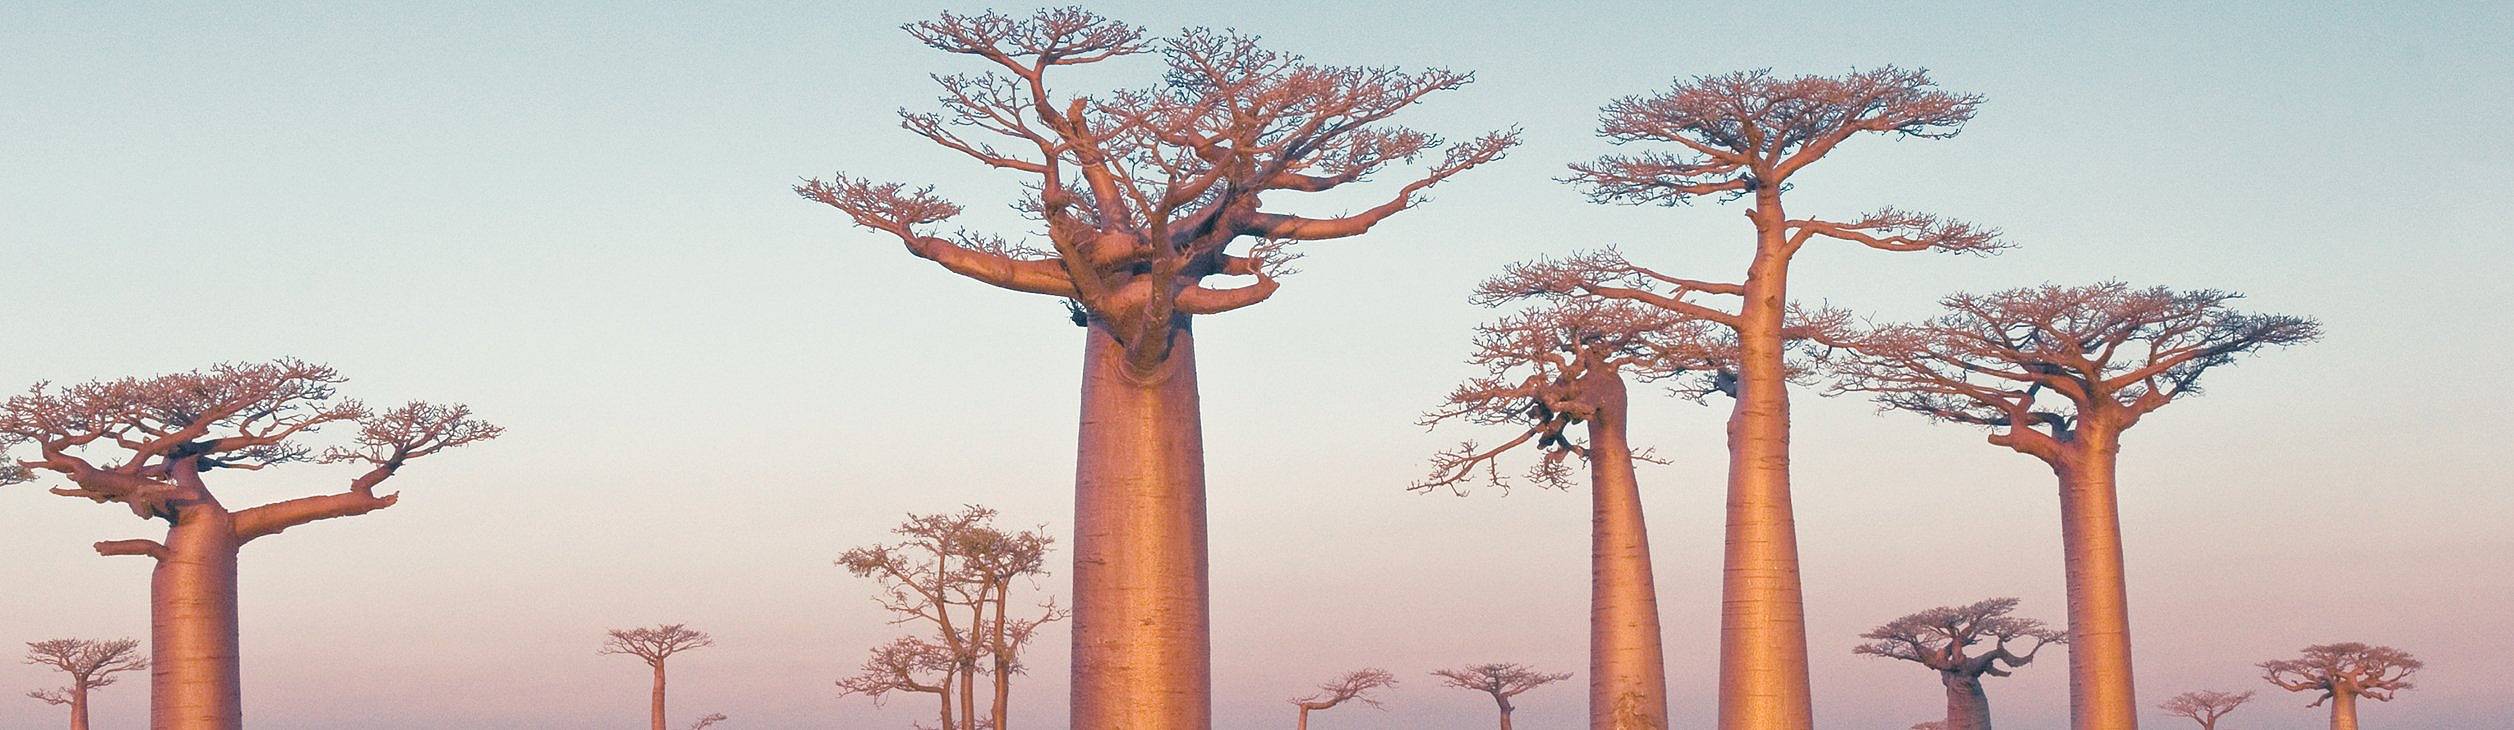 Crea il tuo viaggio in Madagascar in autunno, 100% su misura